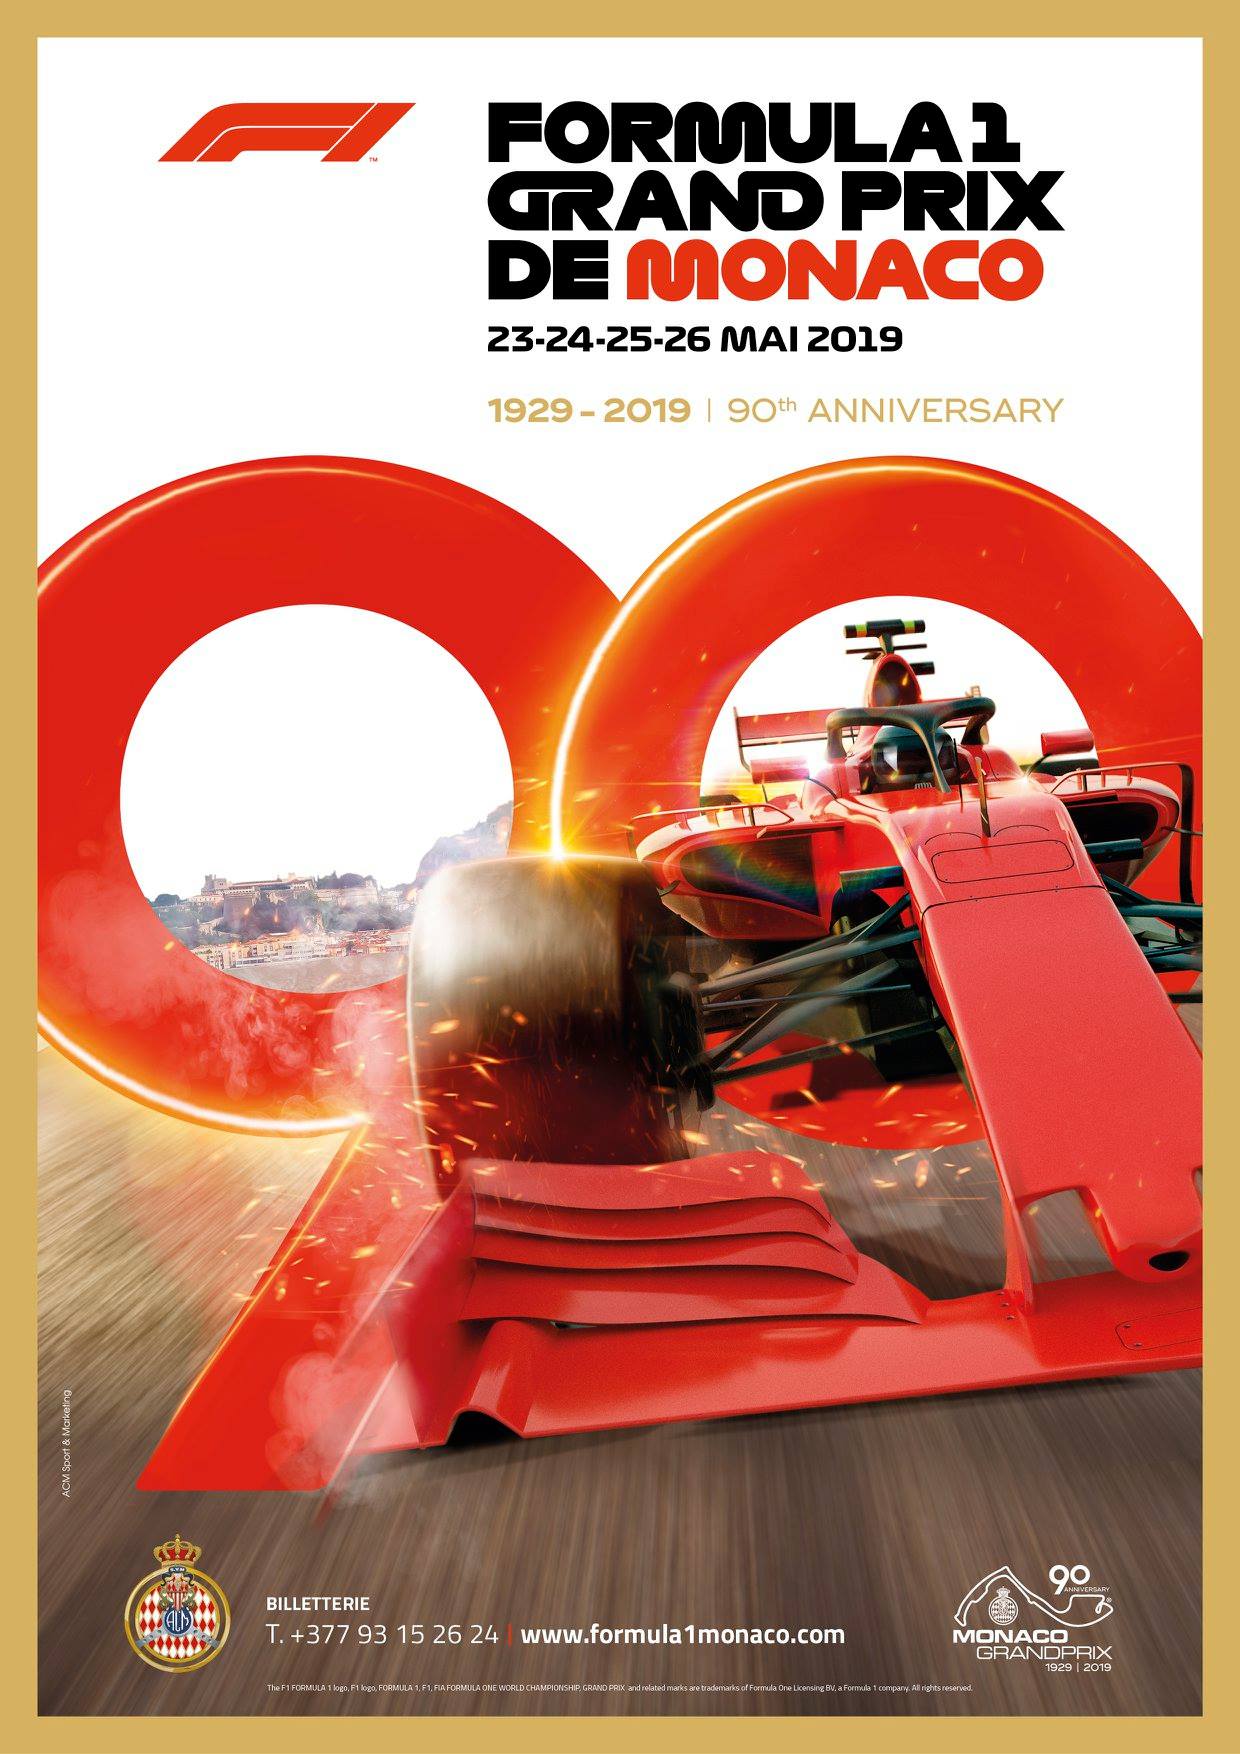 Grand Prix de Monaco 2019 ⋆ Five Stars Limousines Monte-Carlo